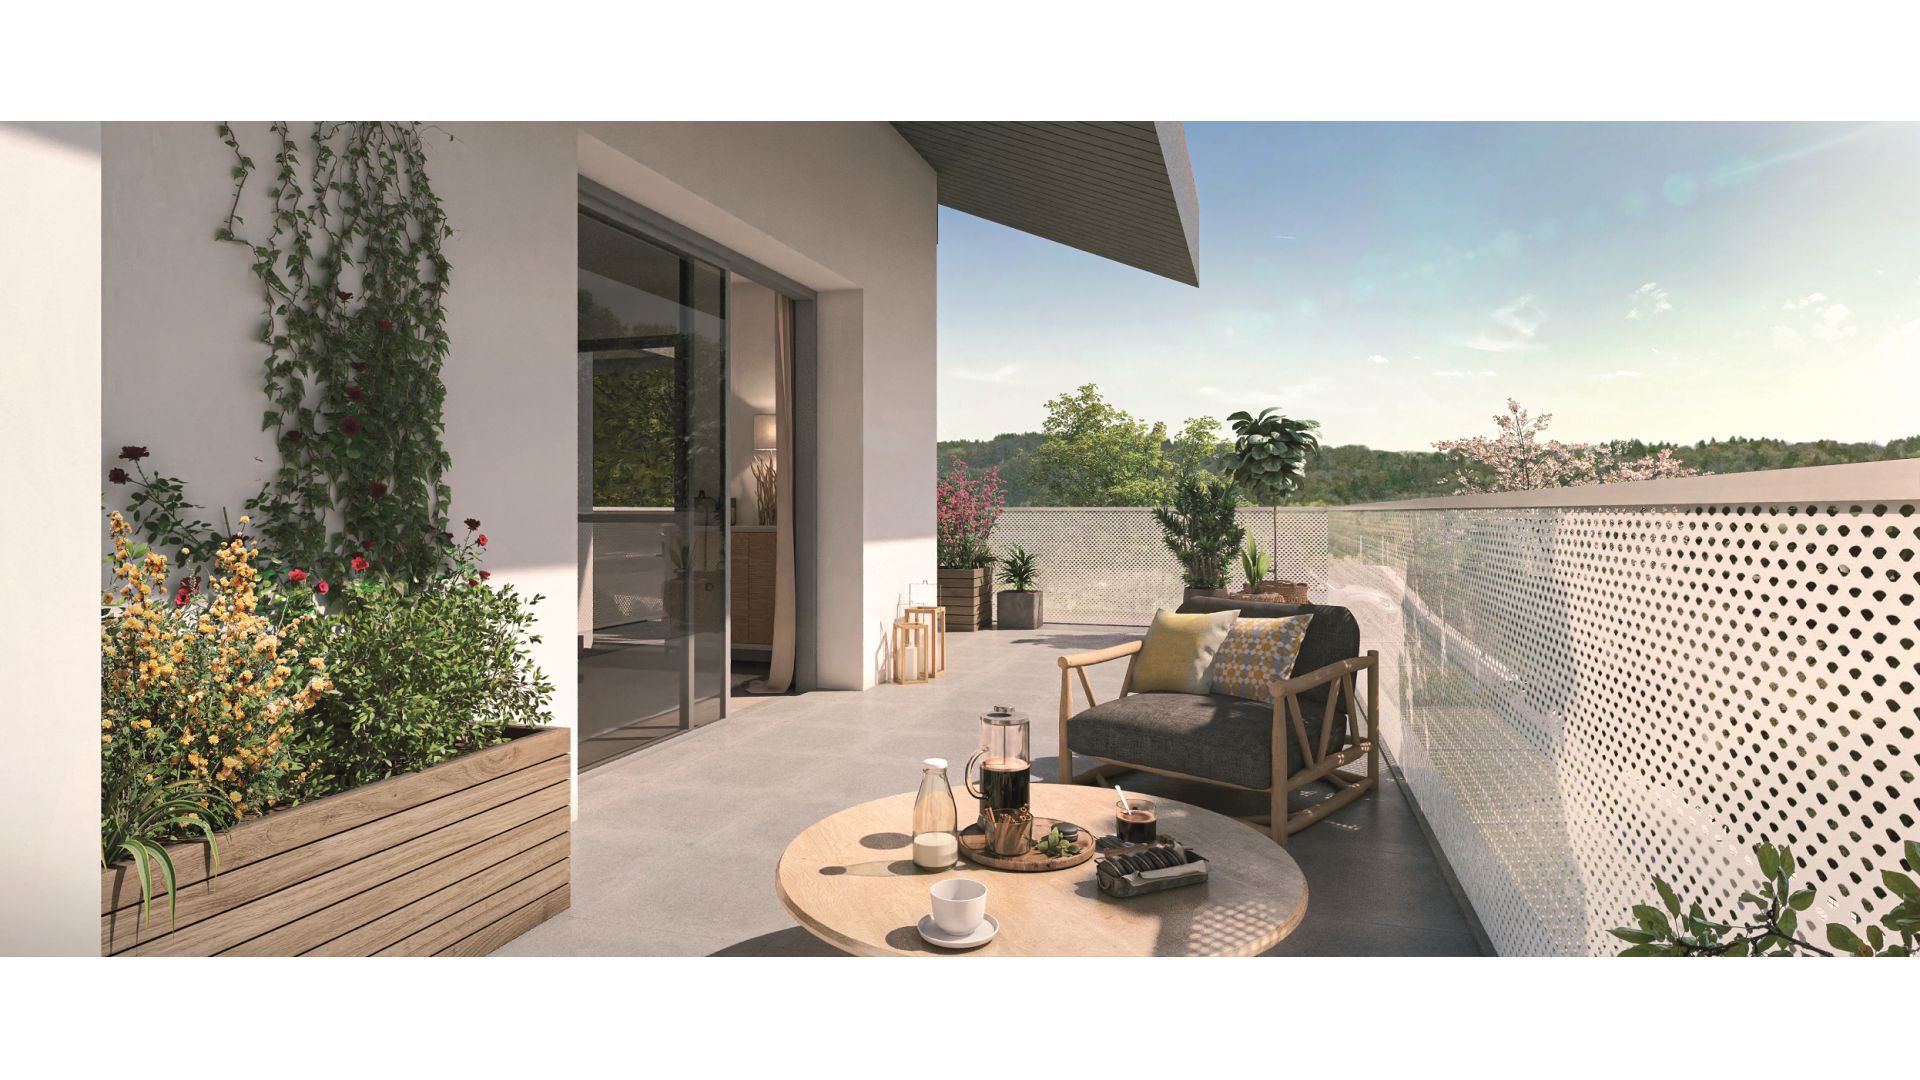 Greencity immobilier - achat appartements neufs du T2 au T4 - Résidence Amédée - 74140 Massongy